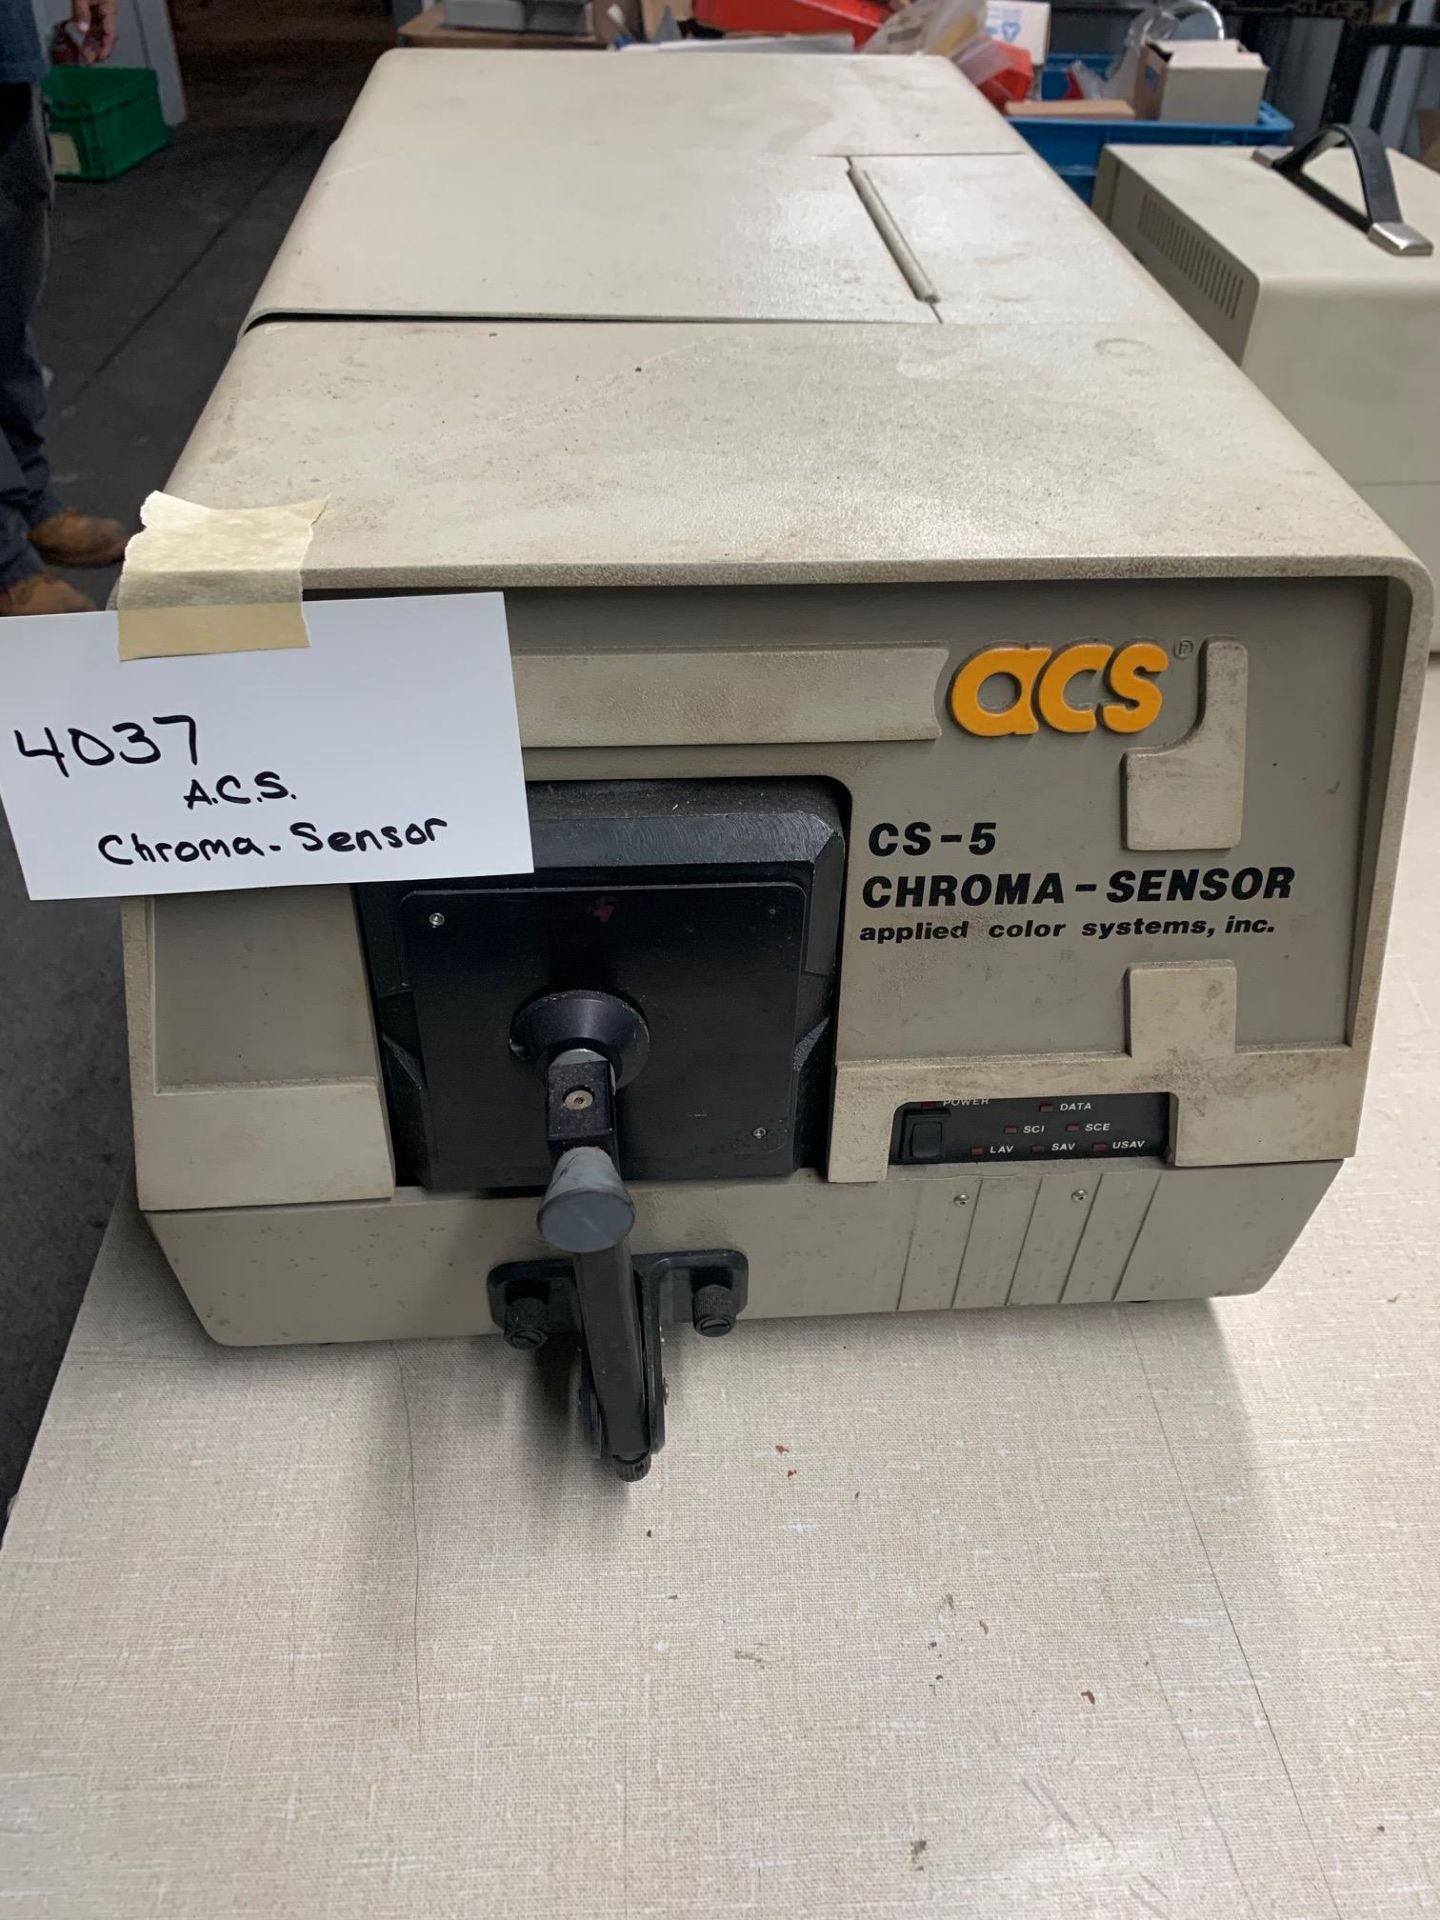 Lab Equipment - ACS CS-5 CHROMA SENSOR Color System Serial 0175, Rigging Fee: $5